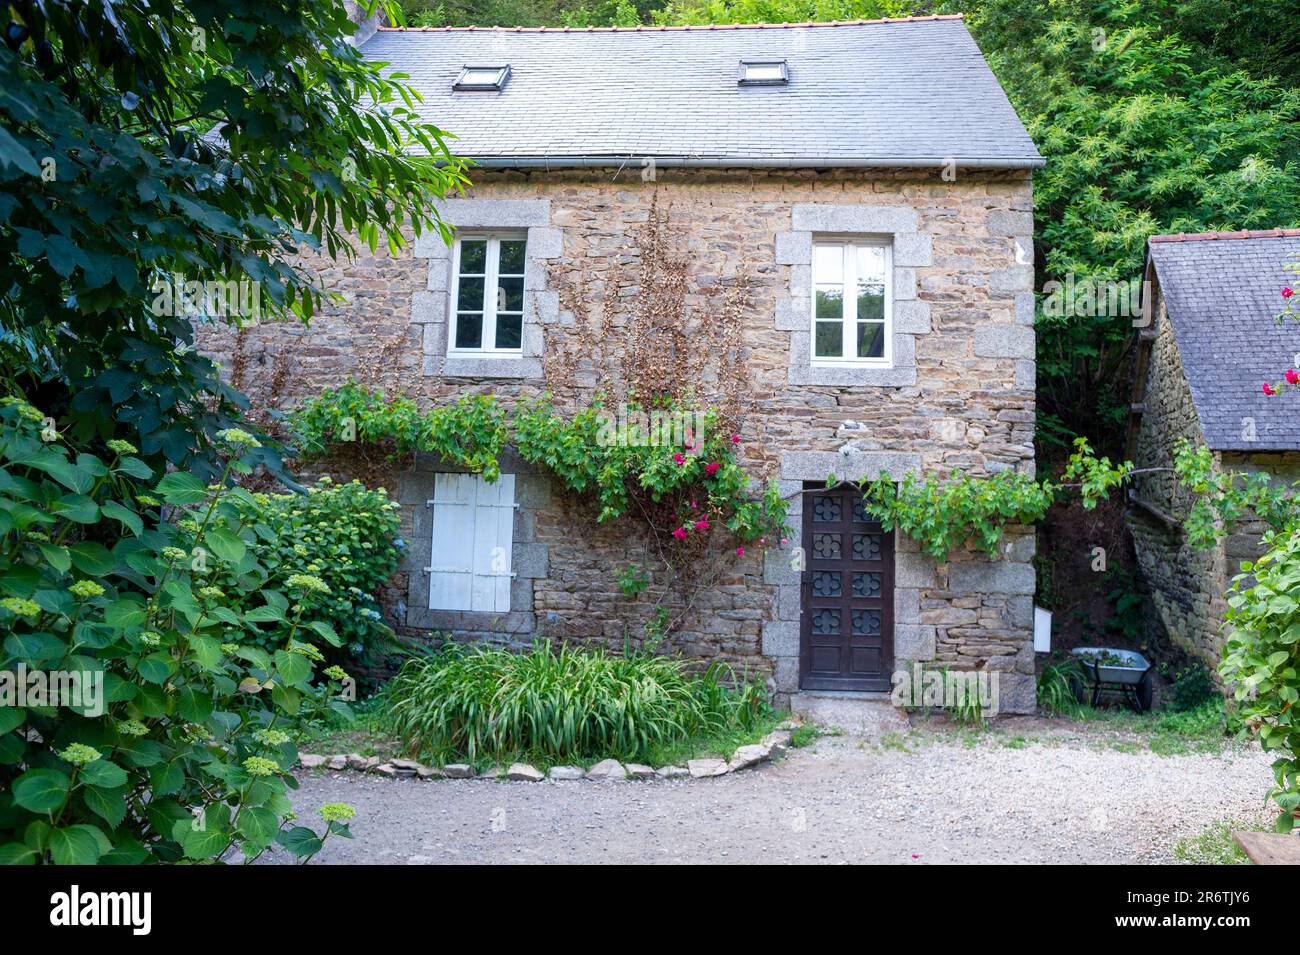 Maison bretonne typique, Pont-Aven, Bretagne, France. Petite maison bretonne en granit. Les cadres de fenêtre sont faits de pierre de coupe fine. Banque D'Images